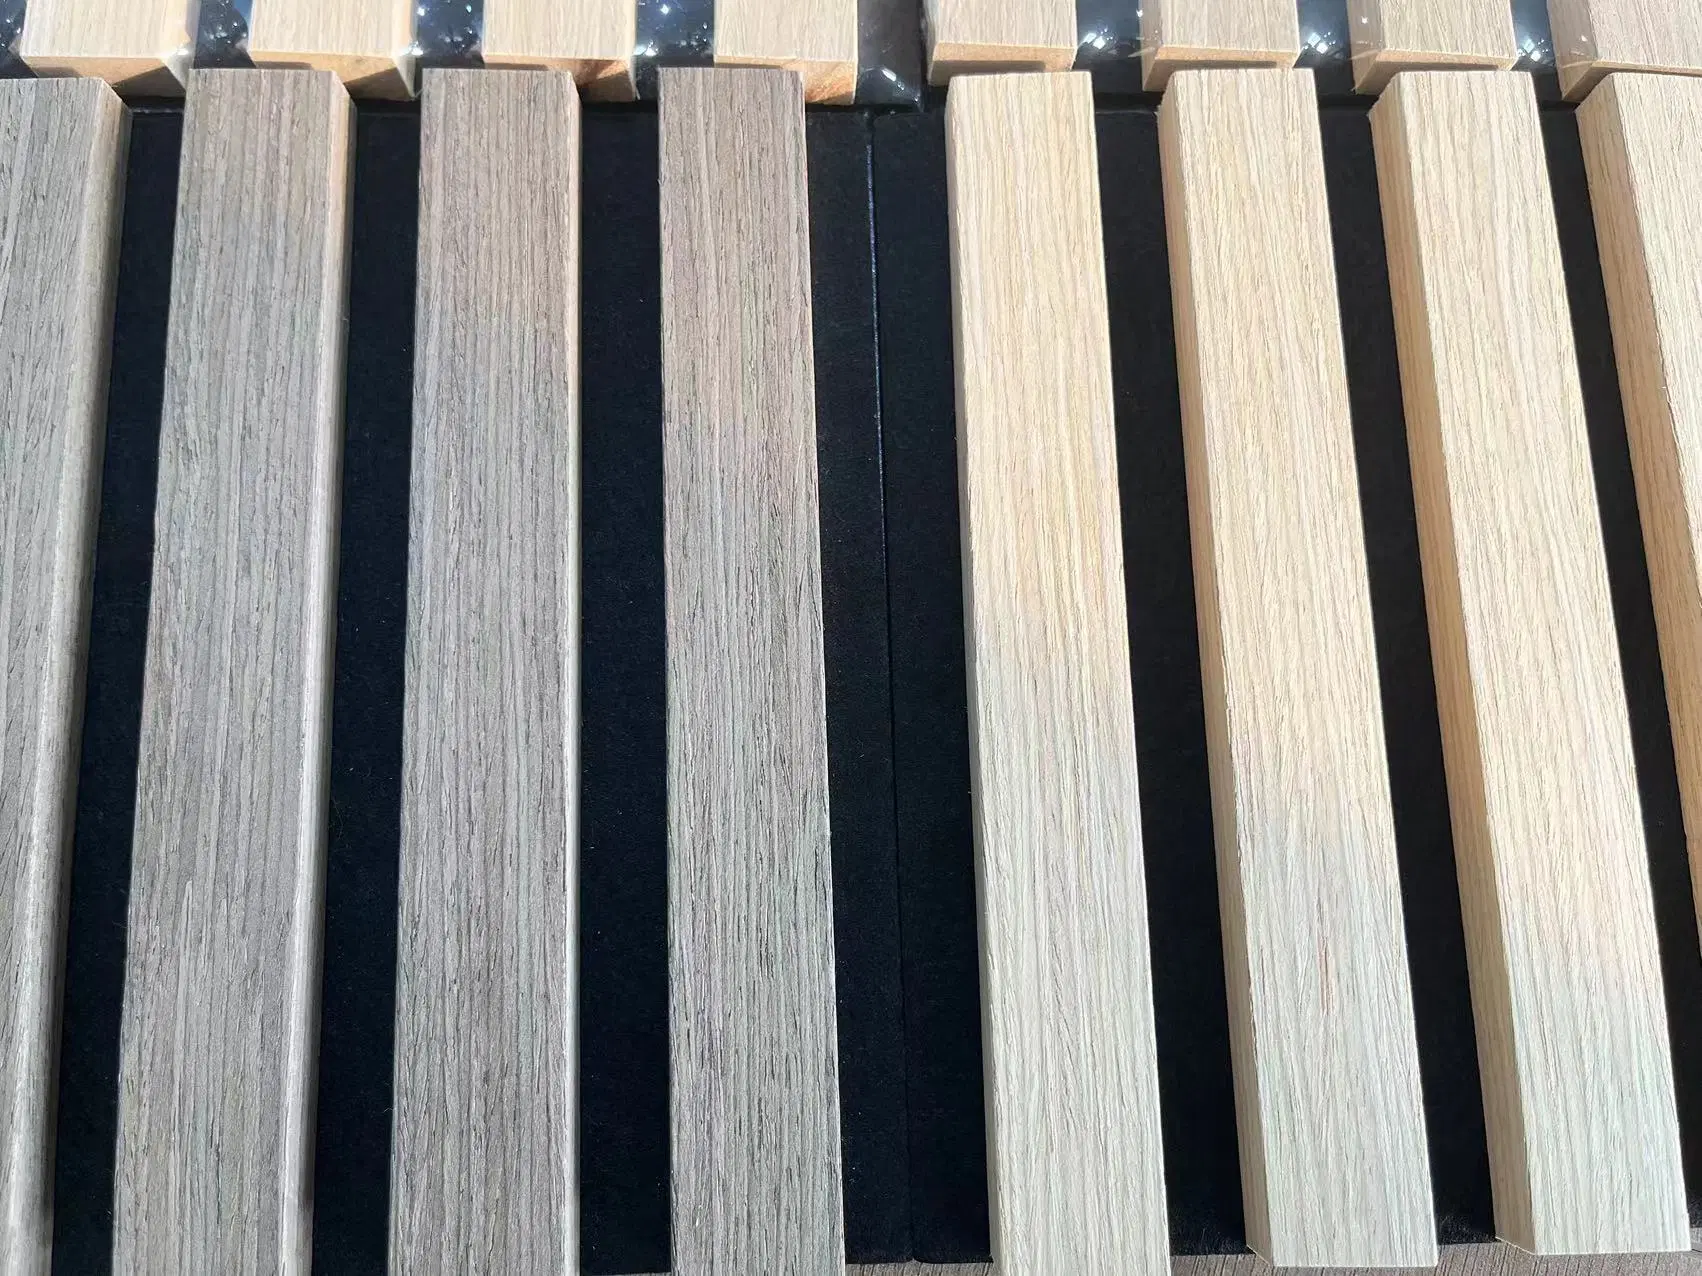 Горячий продавать и популярной в европейских и американских рынок MDF деревянной планке панель сконструирована из шпона черного цвета панели для ПЭТ